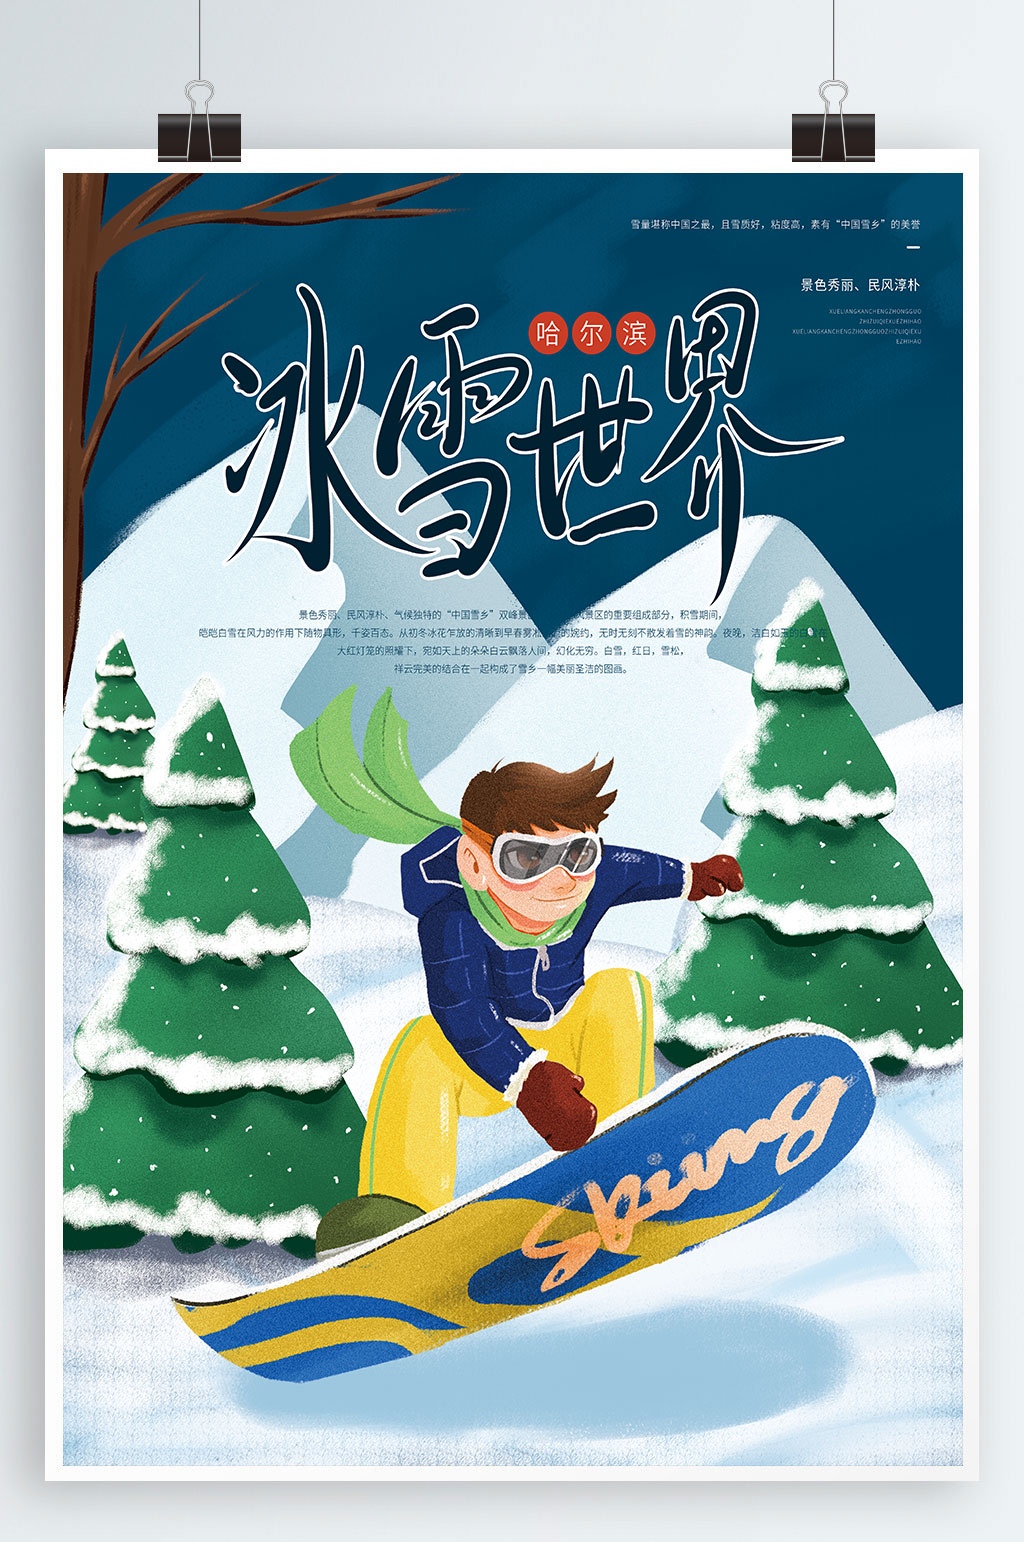 插画风手绘男子滑雪哈尔滨冰雪节宣传海报